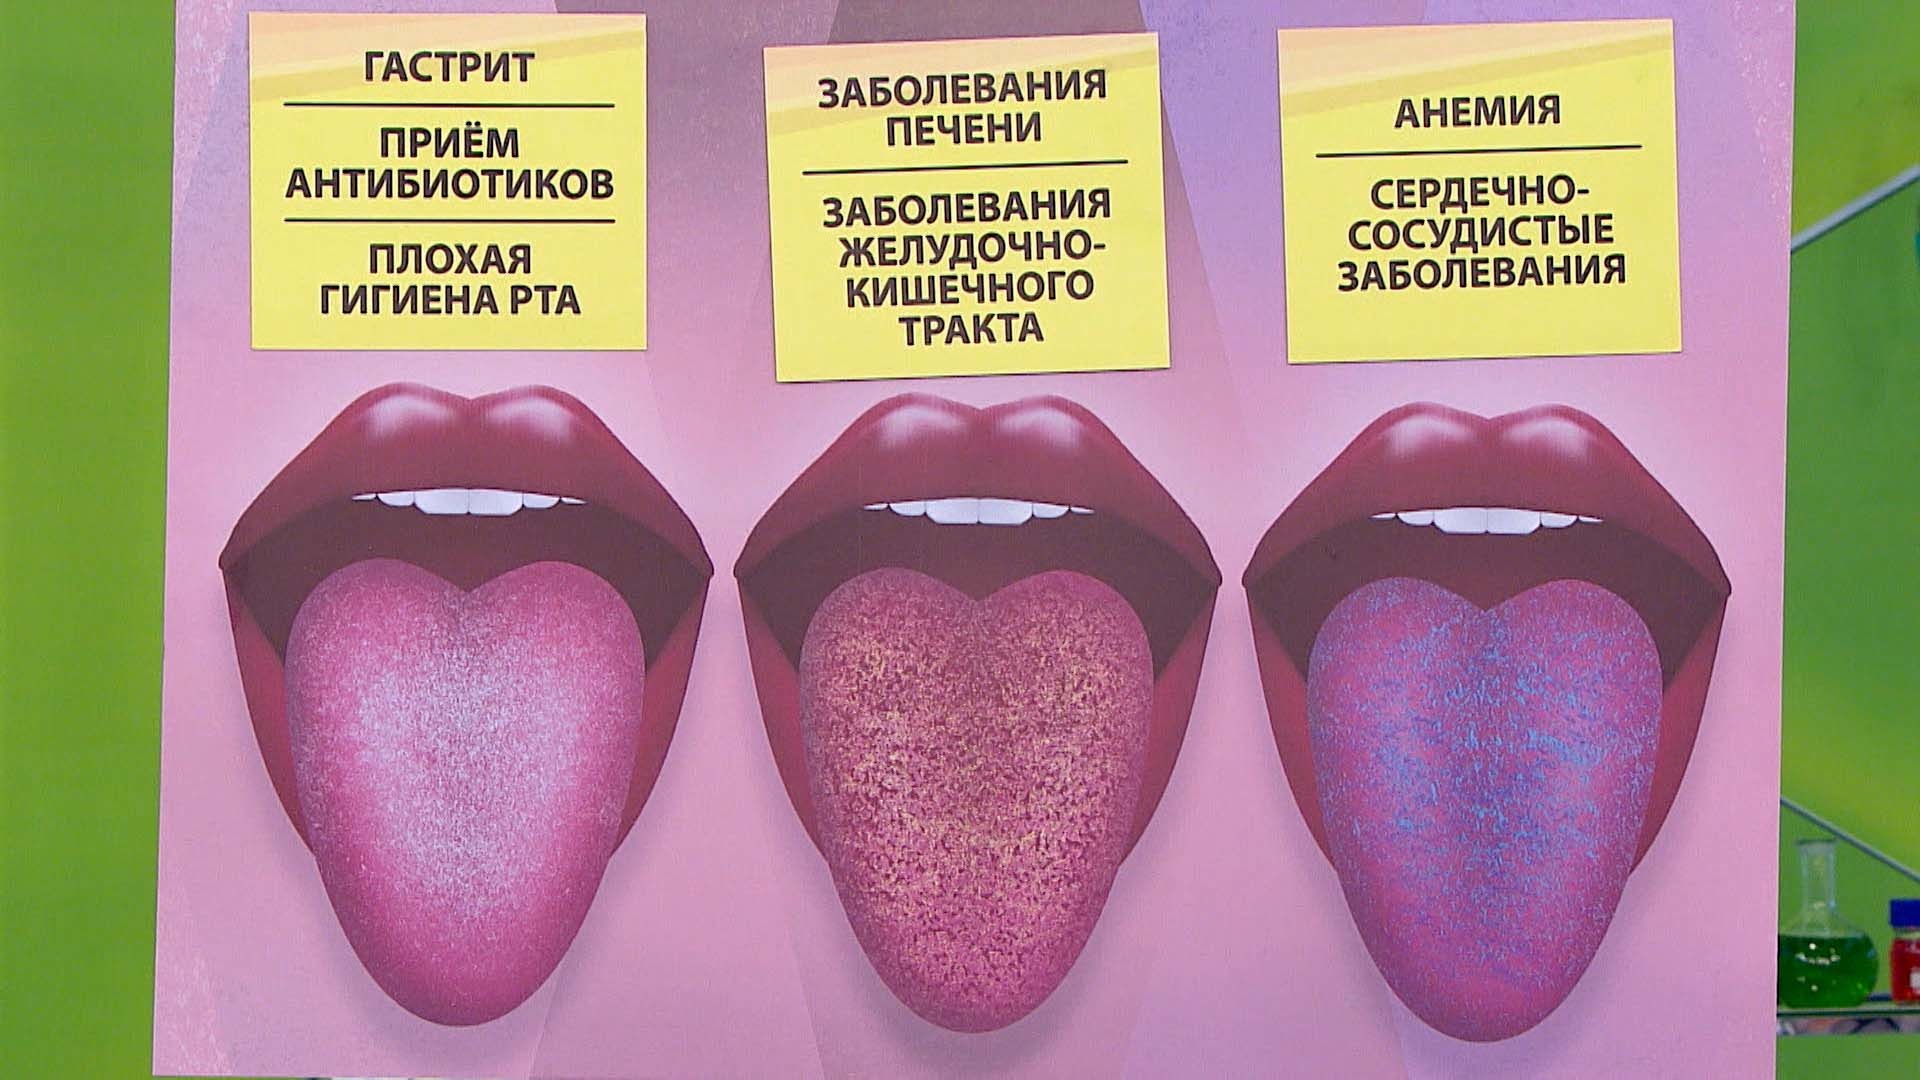 Язык человека определить болезнь. Заболевания по цвету языка.